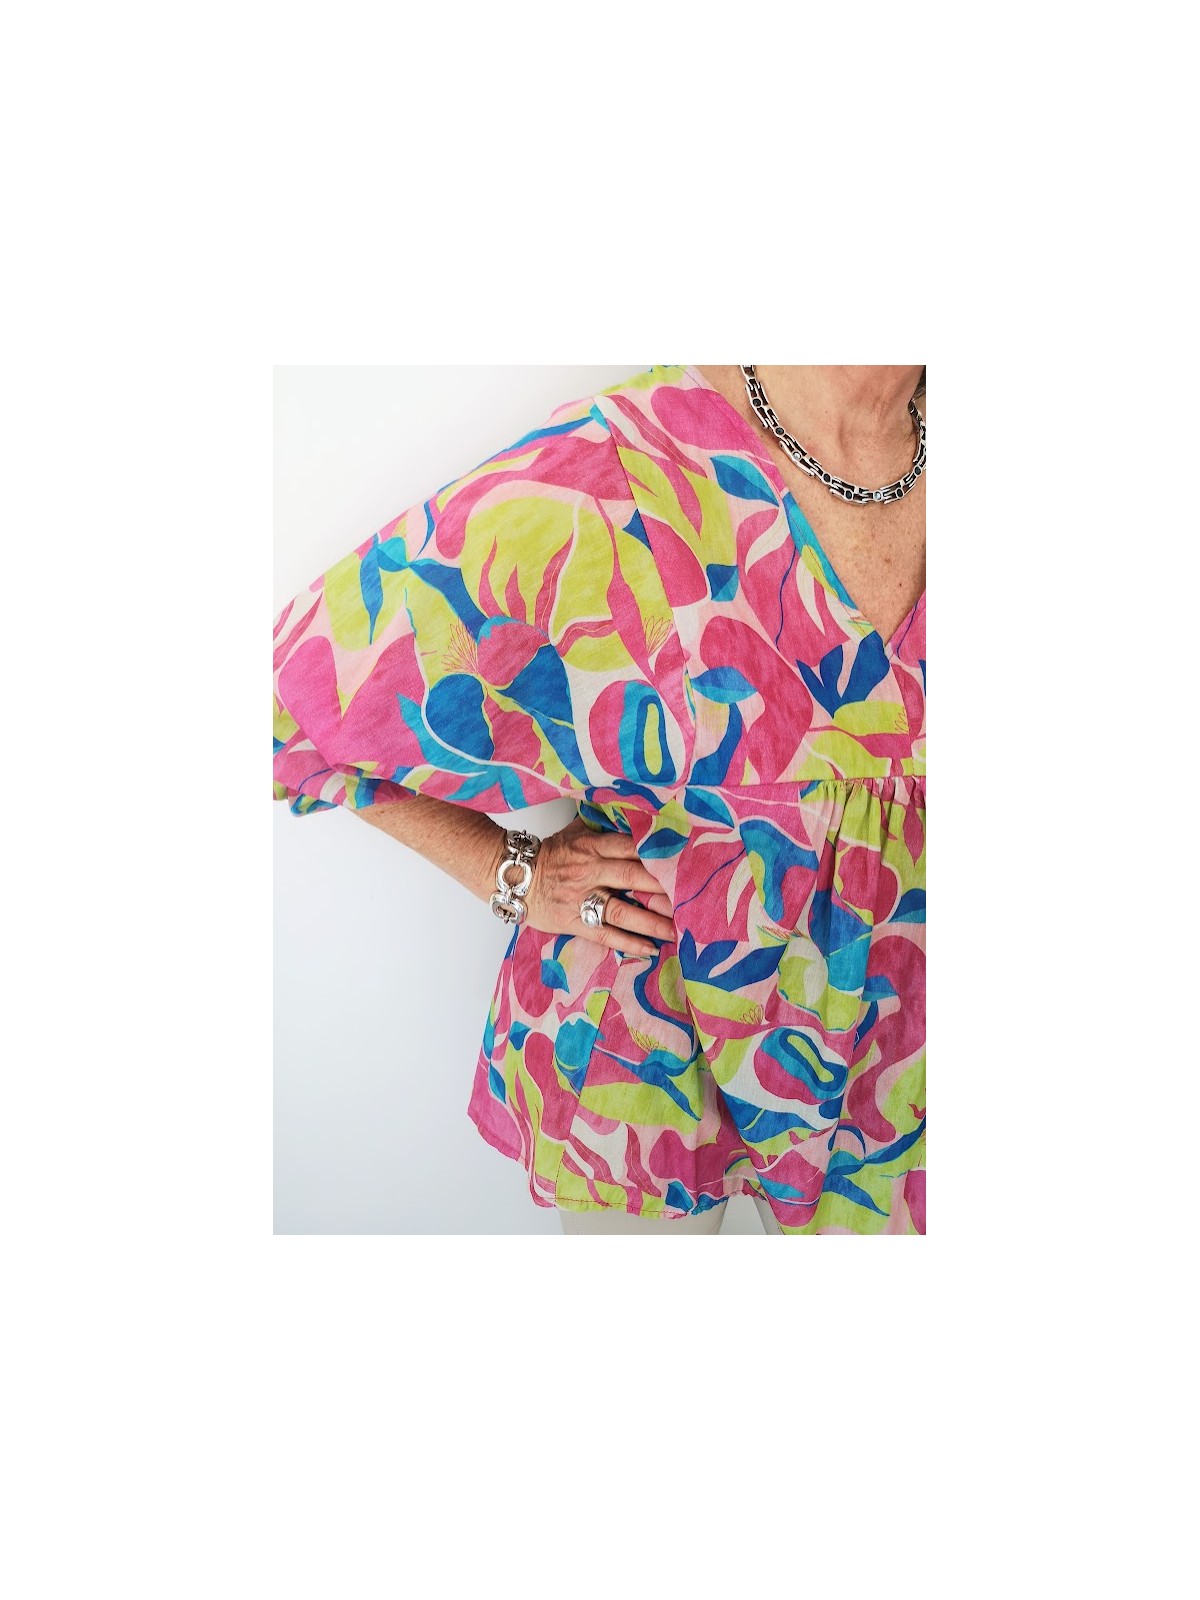 Blouse à motifs colorés tissu fluide l 3 vue manches amples l Tilleulmenthe mode boutique de vêtements femme en ligne